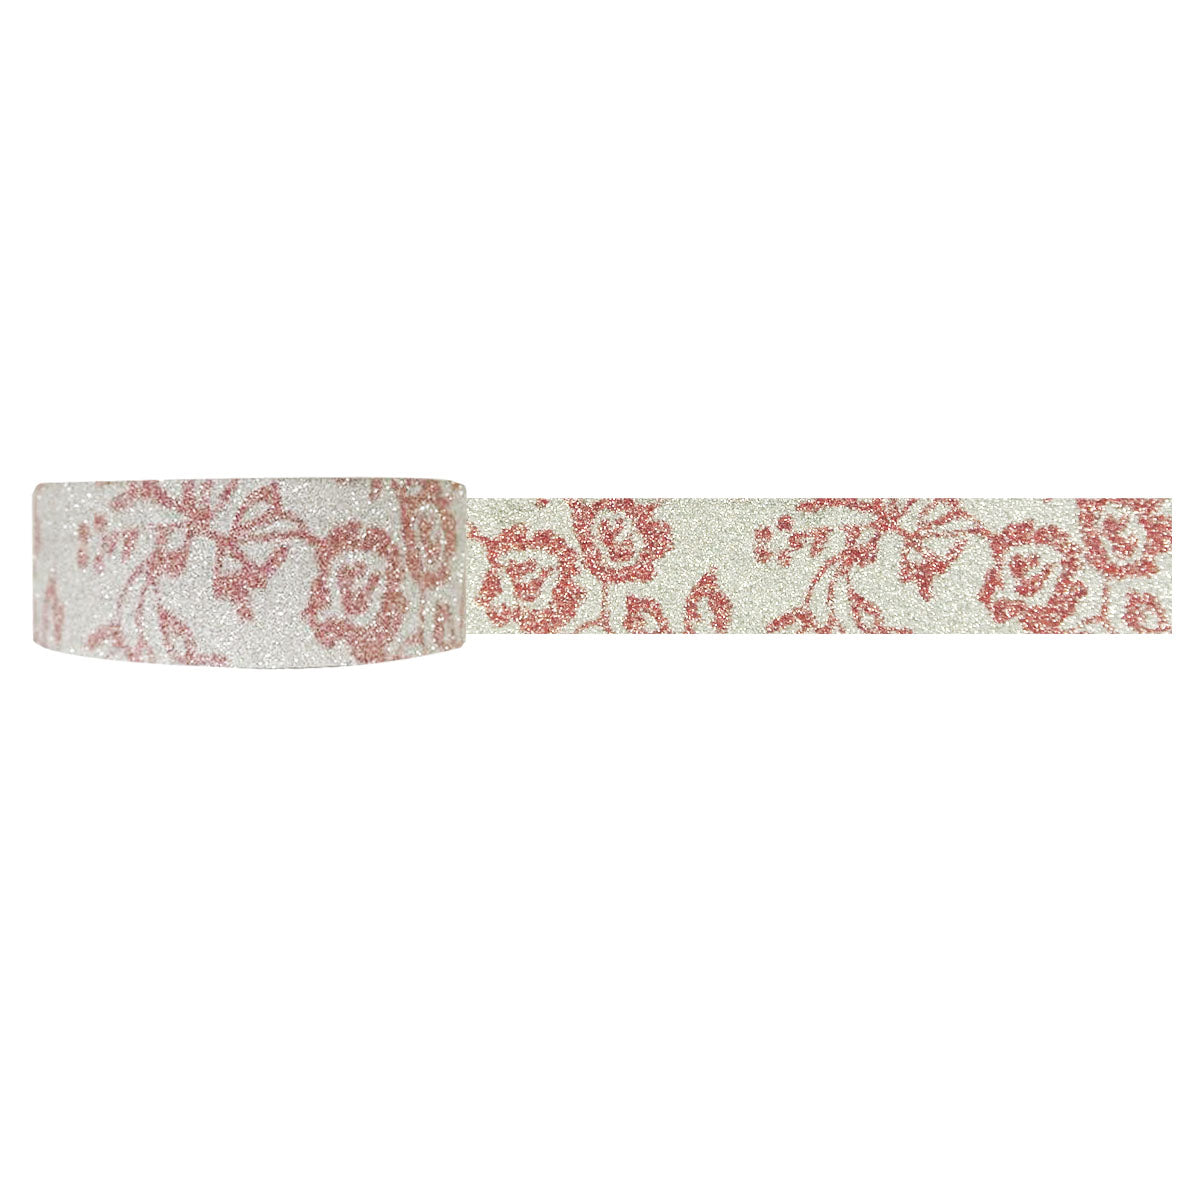 Wrapables Shimmer Japanese Washi Masking Tape